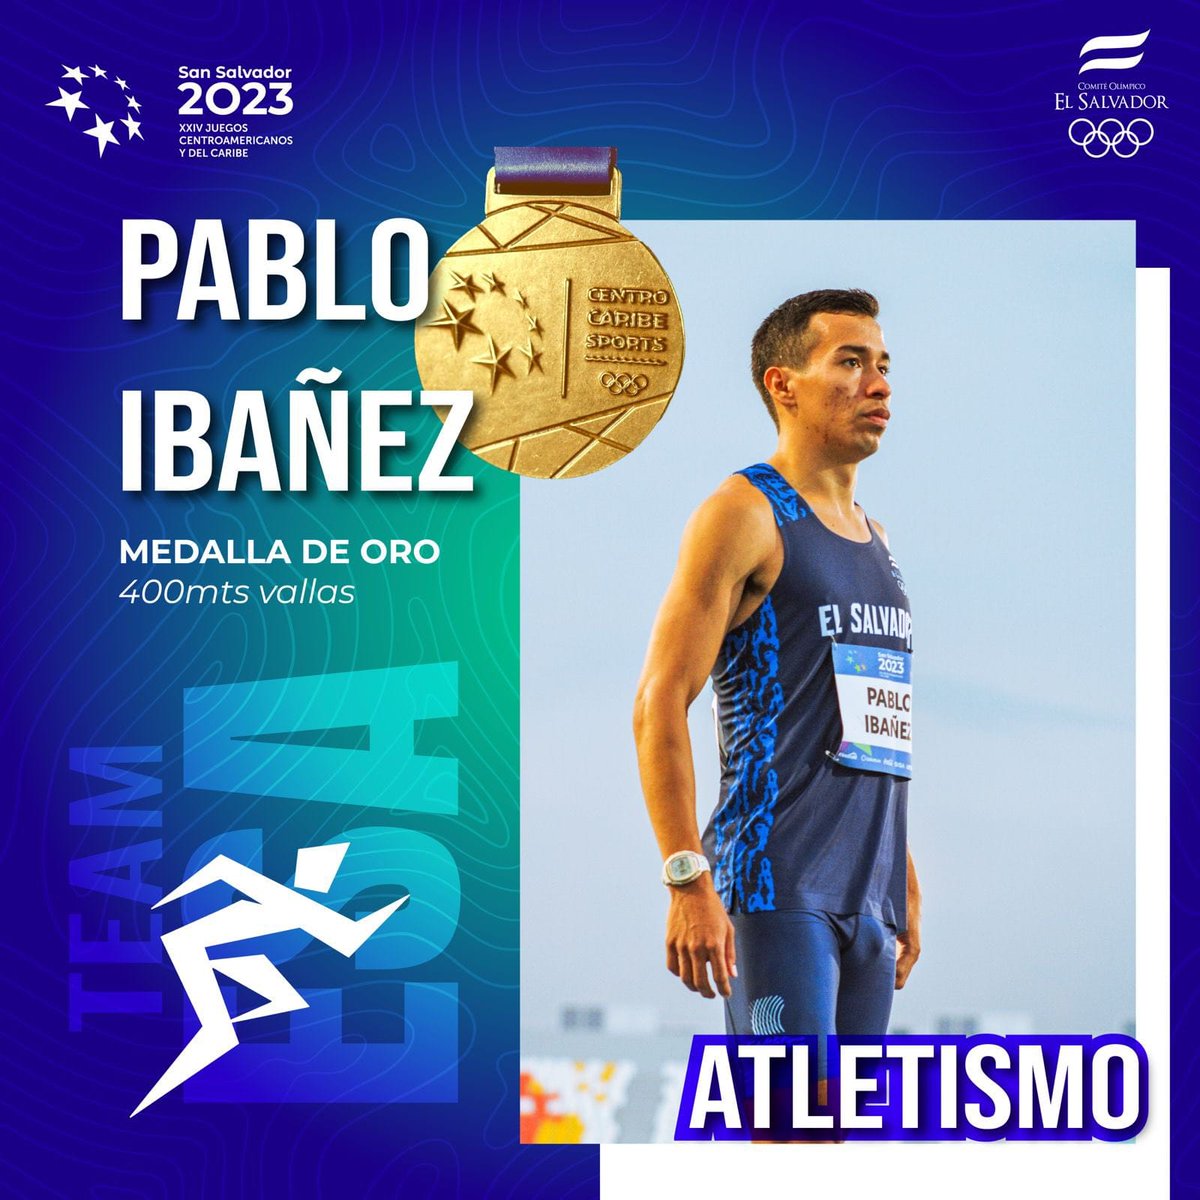 ORO para Pablo Ibáñez en 400m vallas. El deporte da revancha. En 2021 se perdió los Juegos Olímpicos #Tokio2020 por lesión, hoy obtiene su máximo logro. Mensaje: nunca darse por vencido.